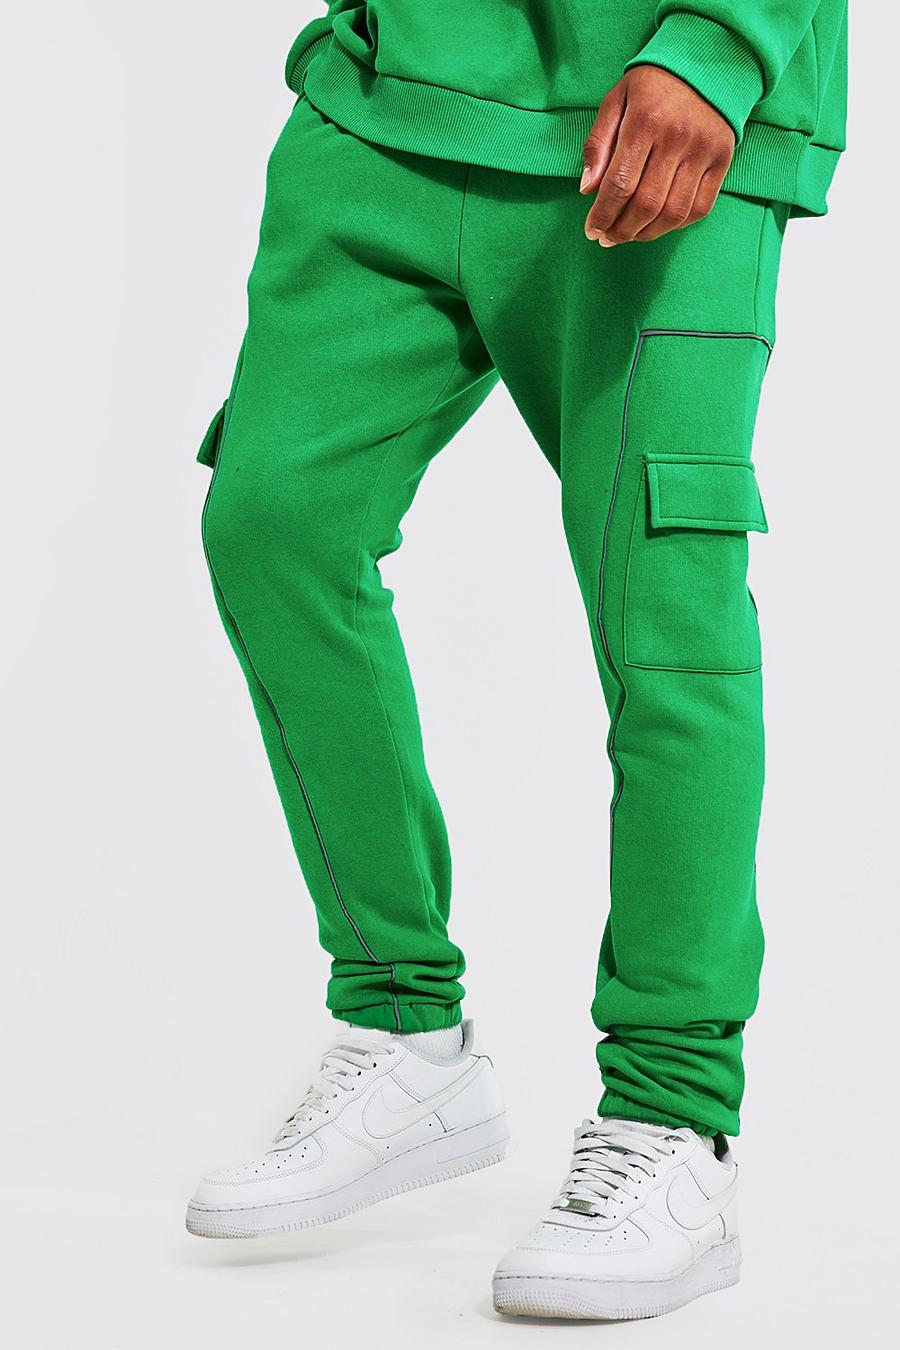 ירוק בוהק verde מכנסי ריצה דגמ'ח עם פסים דקים מחזירי אור, לגברים גבוהים